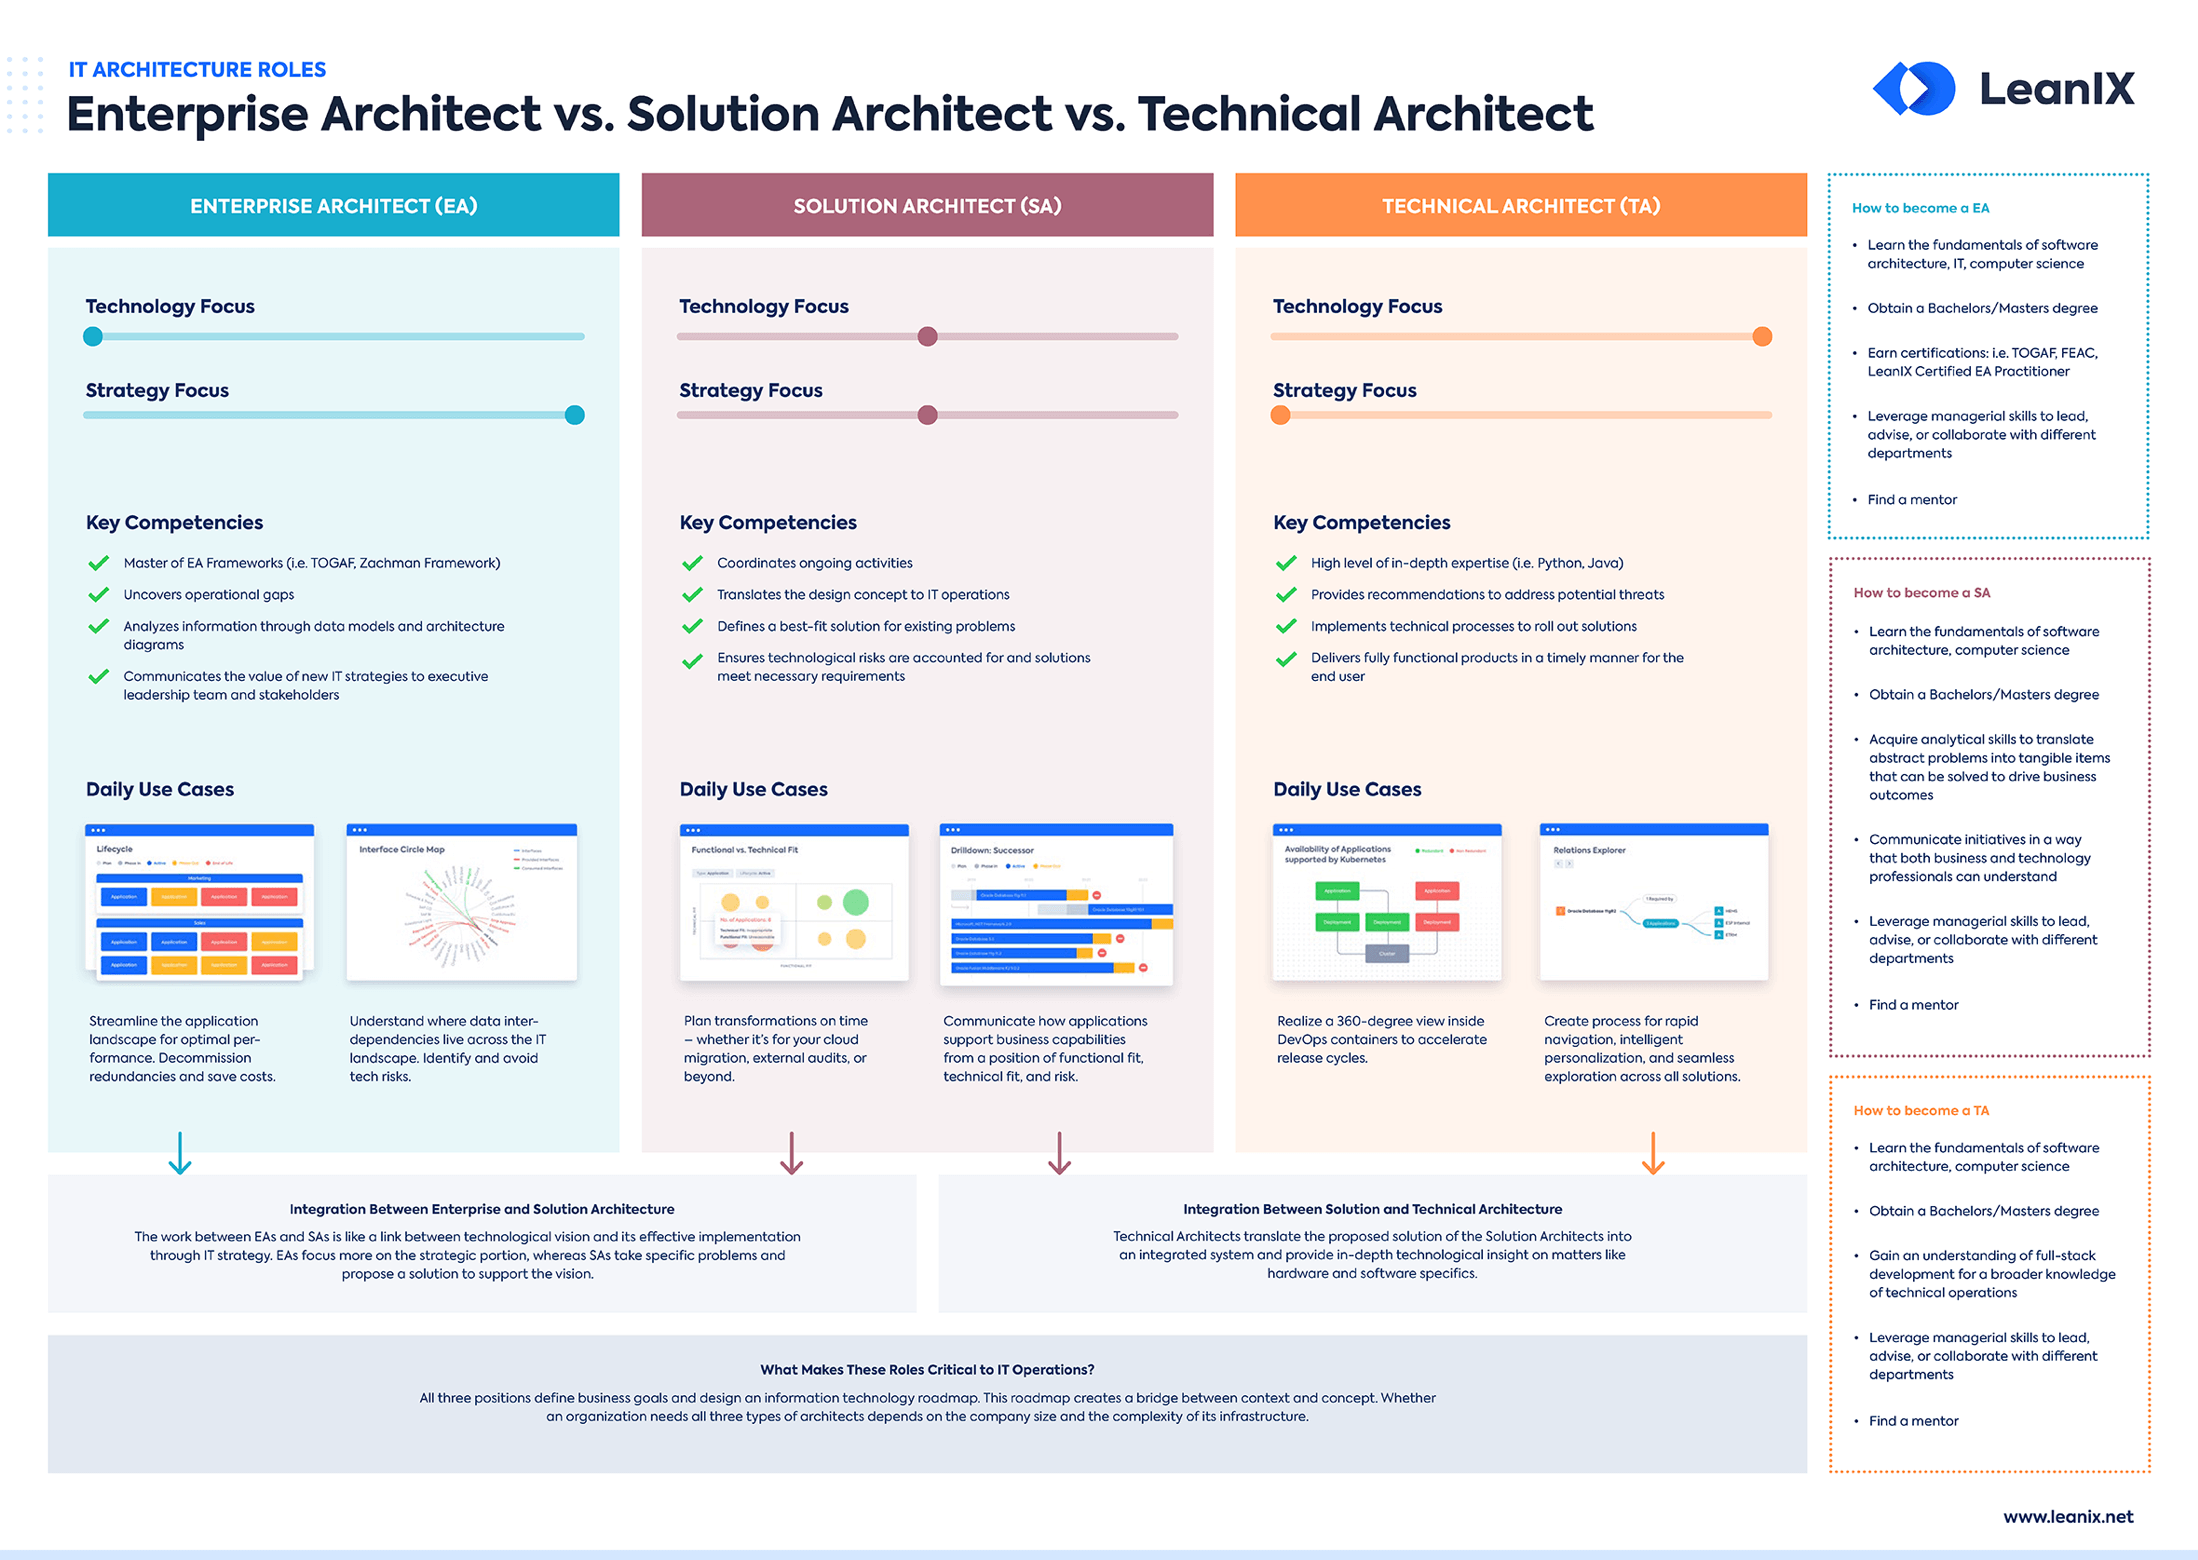 EN-IT-Arch-Roles_Poster_Landing_Page_Preview.pnghttps://www.leanix.net/en/download/comparing-it-architecture-roles